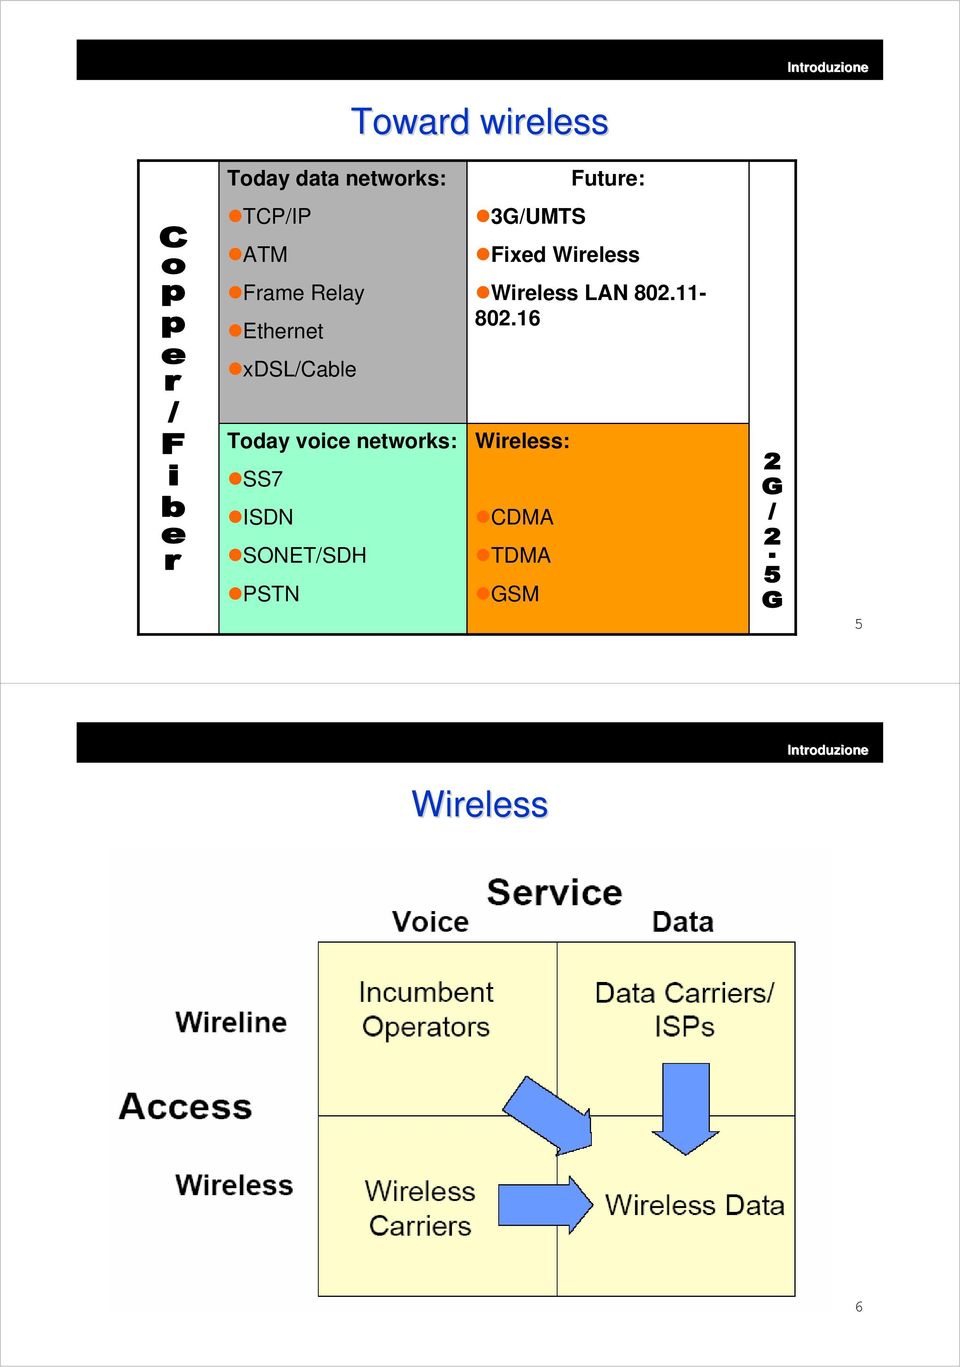 Wireless Wireless LAN 802.11-802.